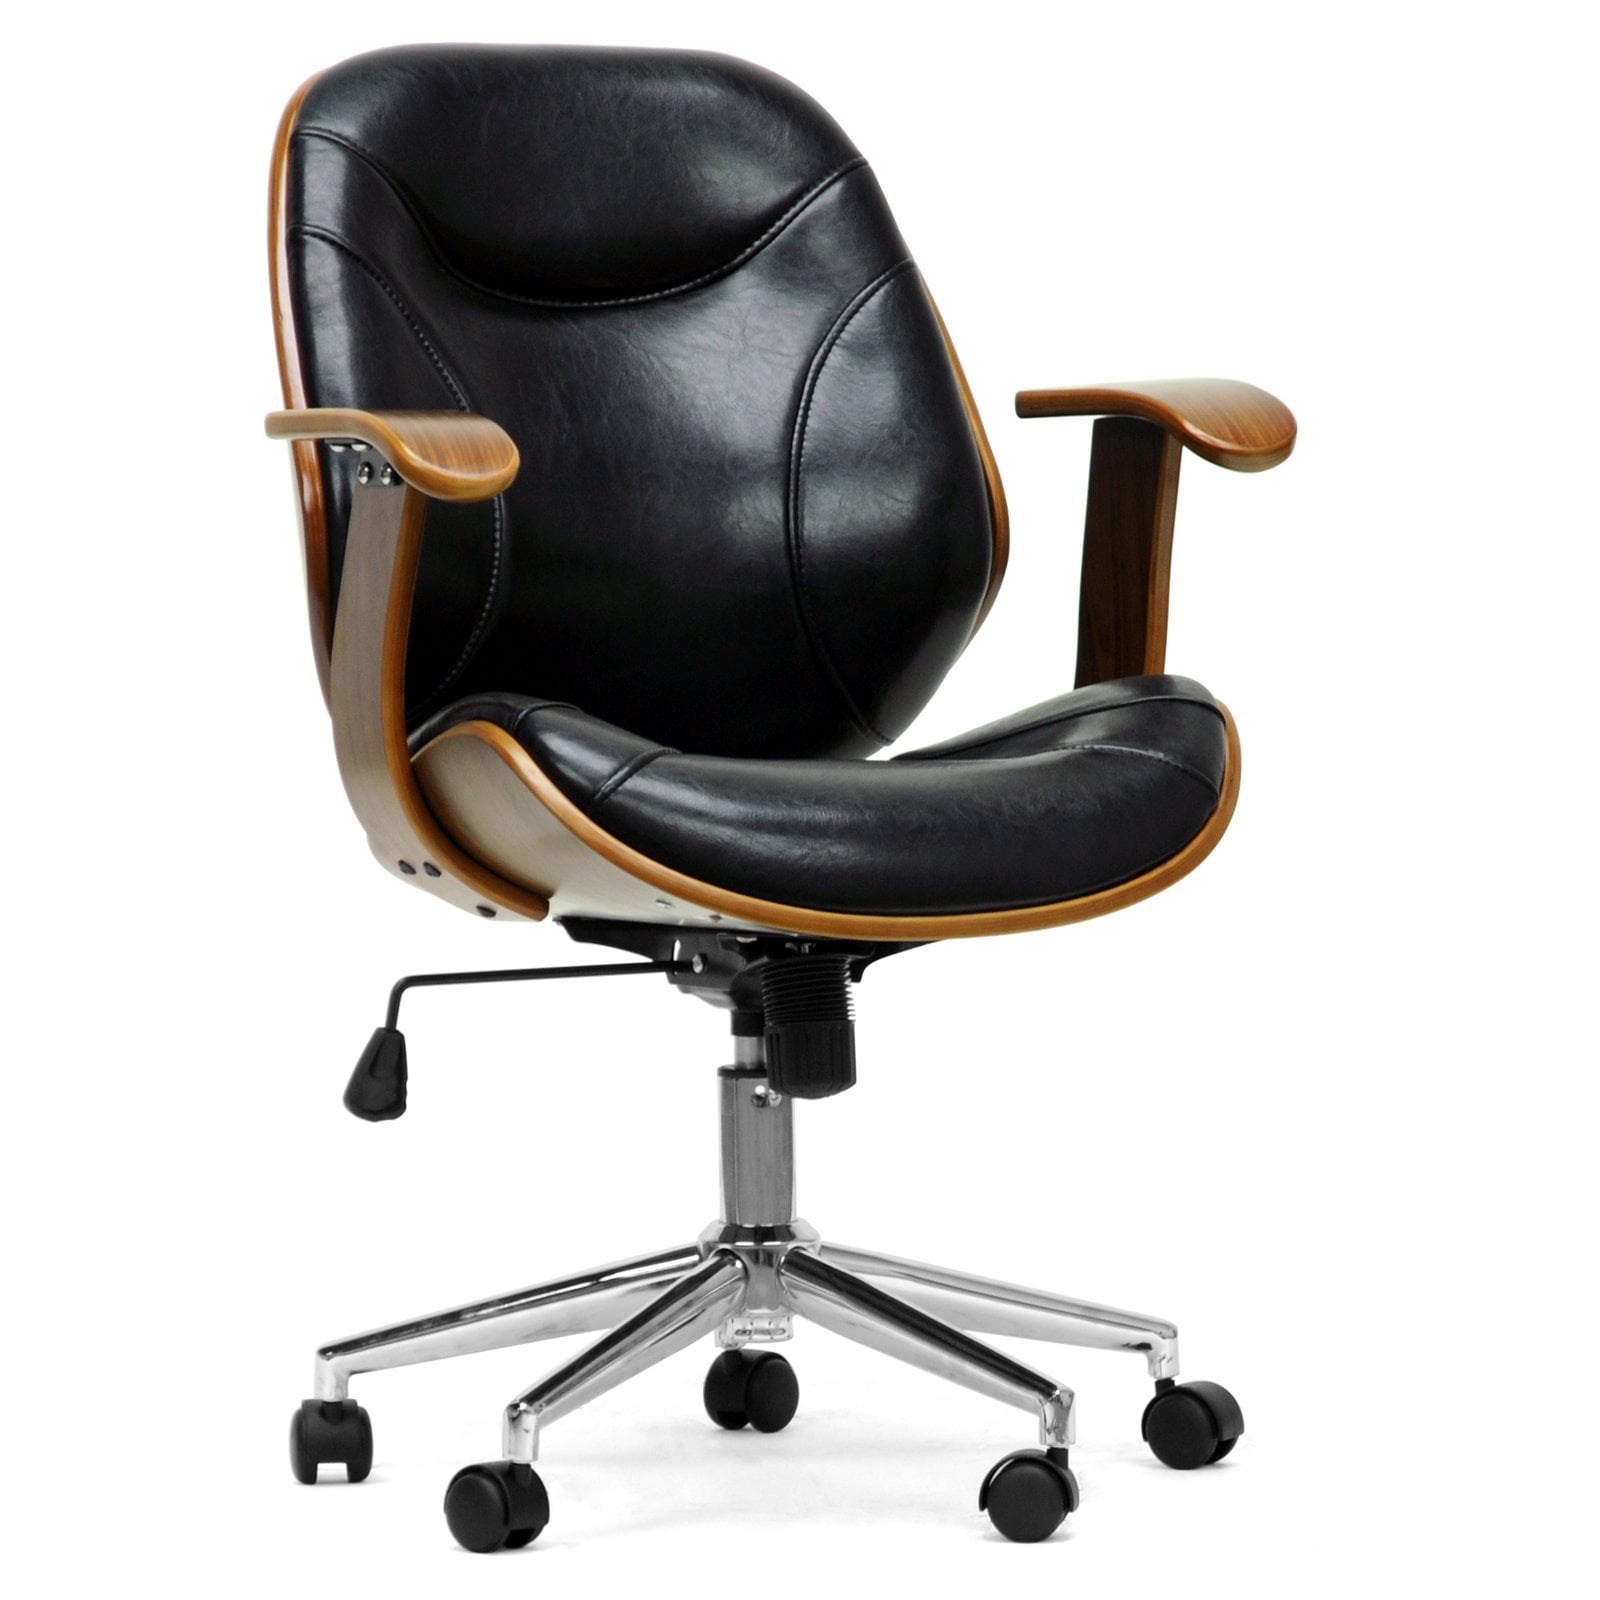 Baxton Studio Rathburn Modern fice Chair Walnut Black